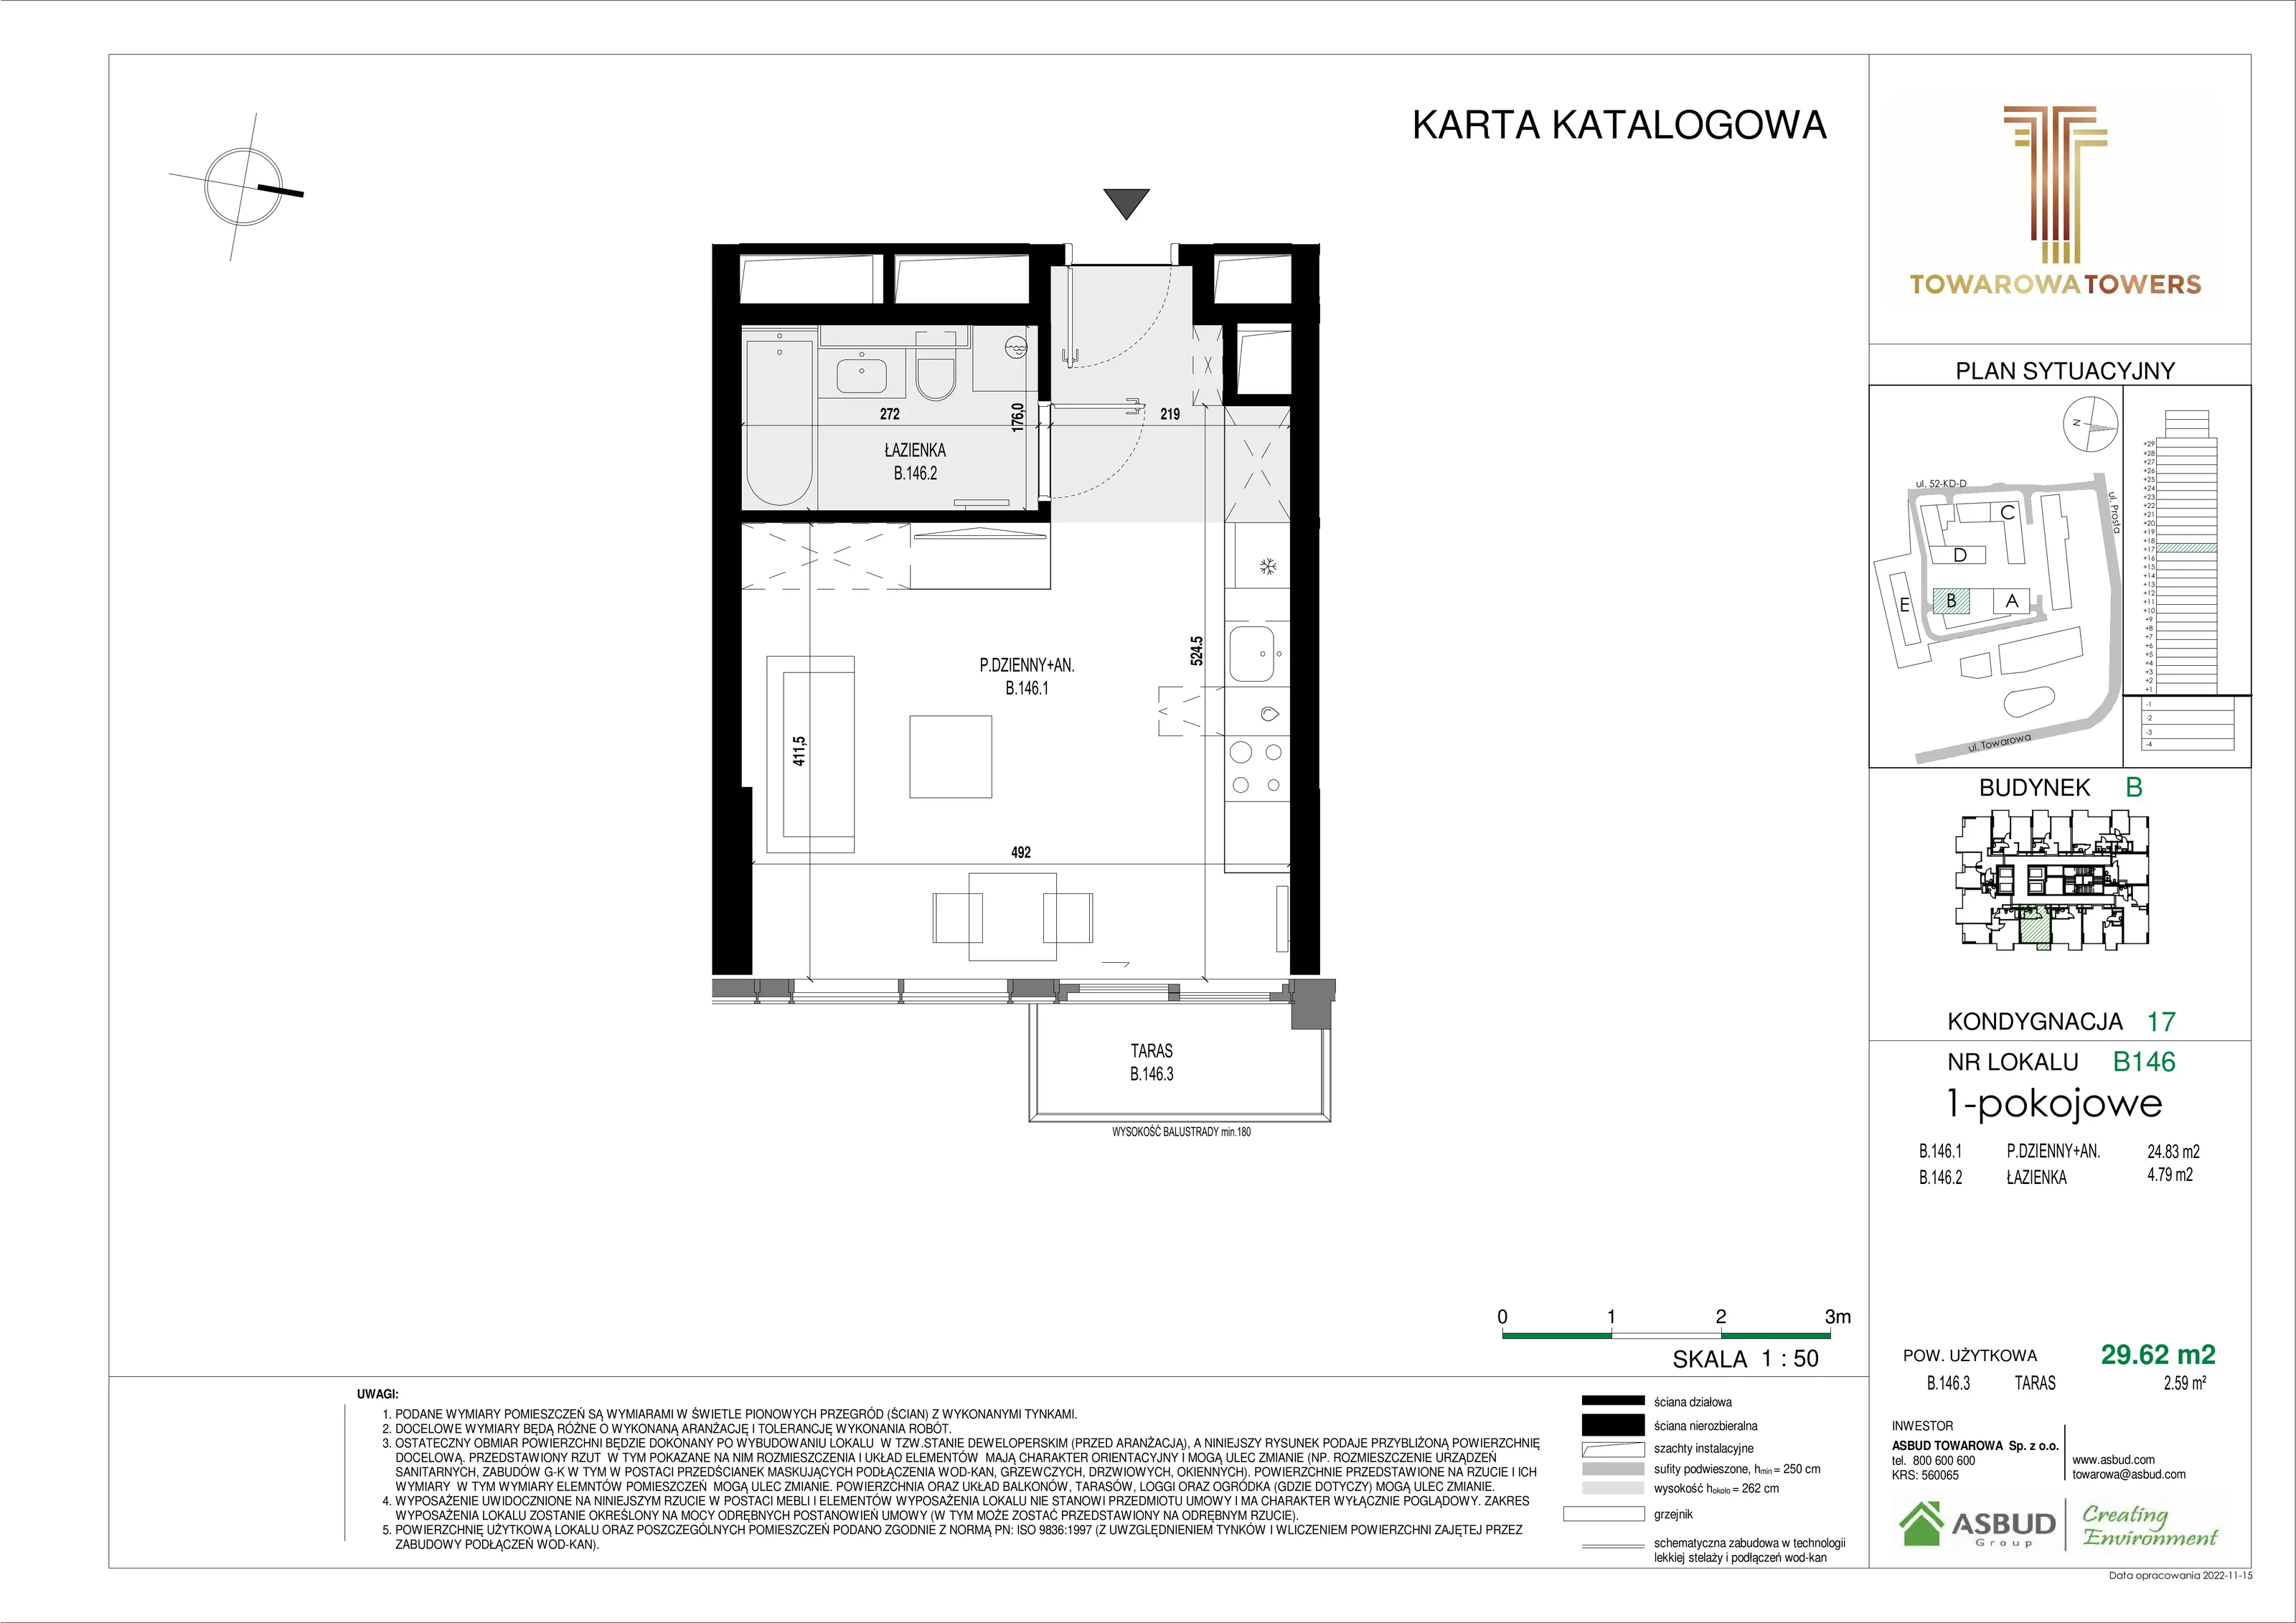 Mieszkanie 29,62 m², piętro 17, oferta nr B.146, Towarowa Towers, Warszawa, Wola, Czyste, ul. Towarowa